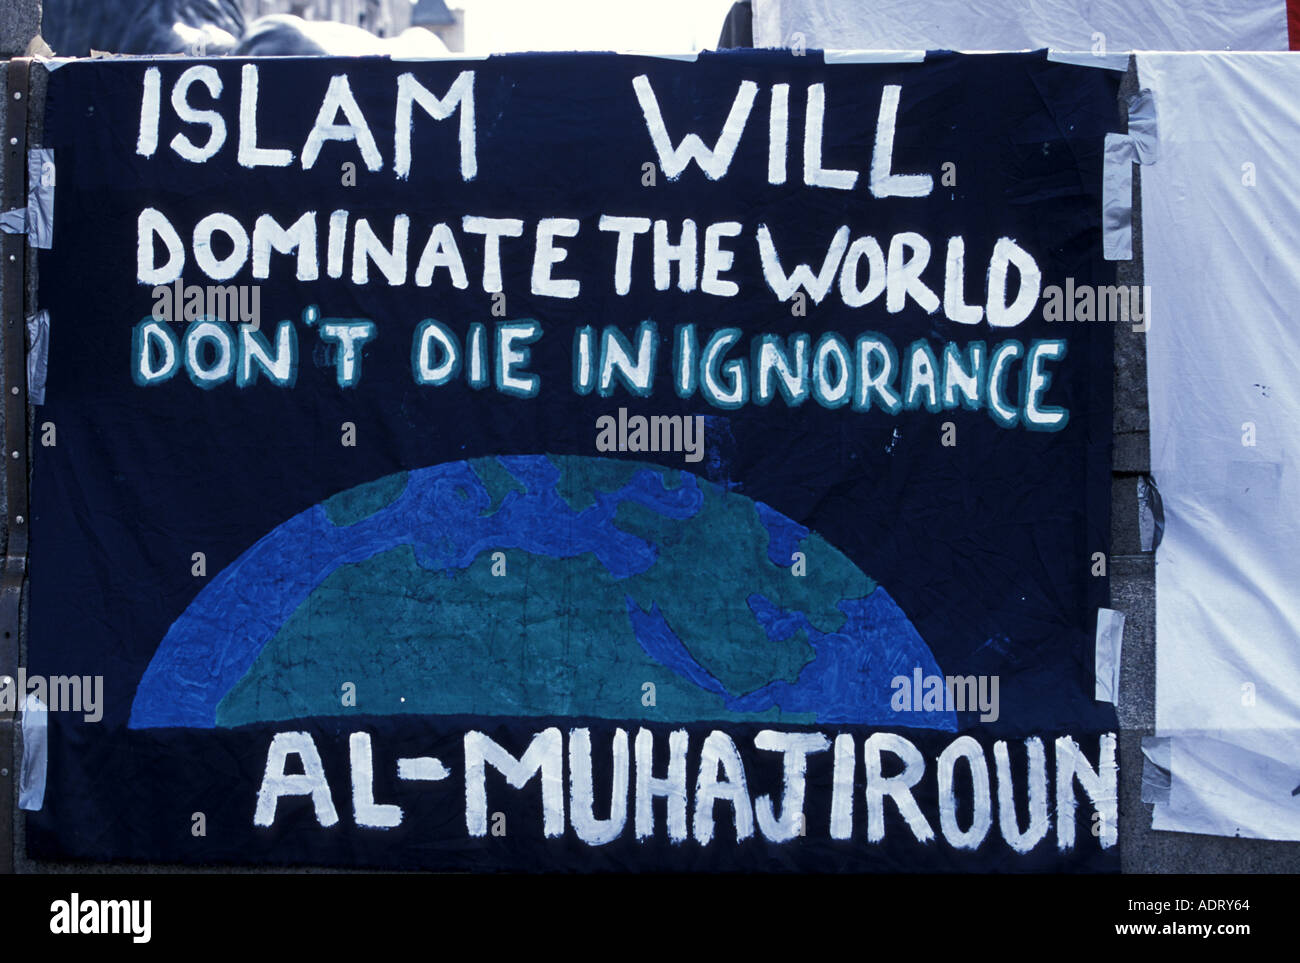 Schild mit der extremen Ansicht der Al Muhajiroun Party Trafalgar Square Demonstration, London Stockfoto